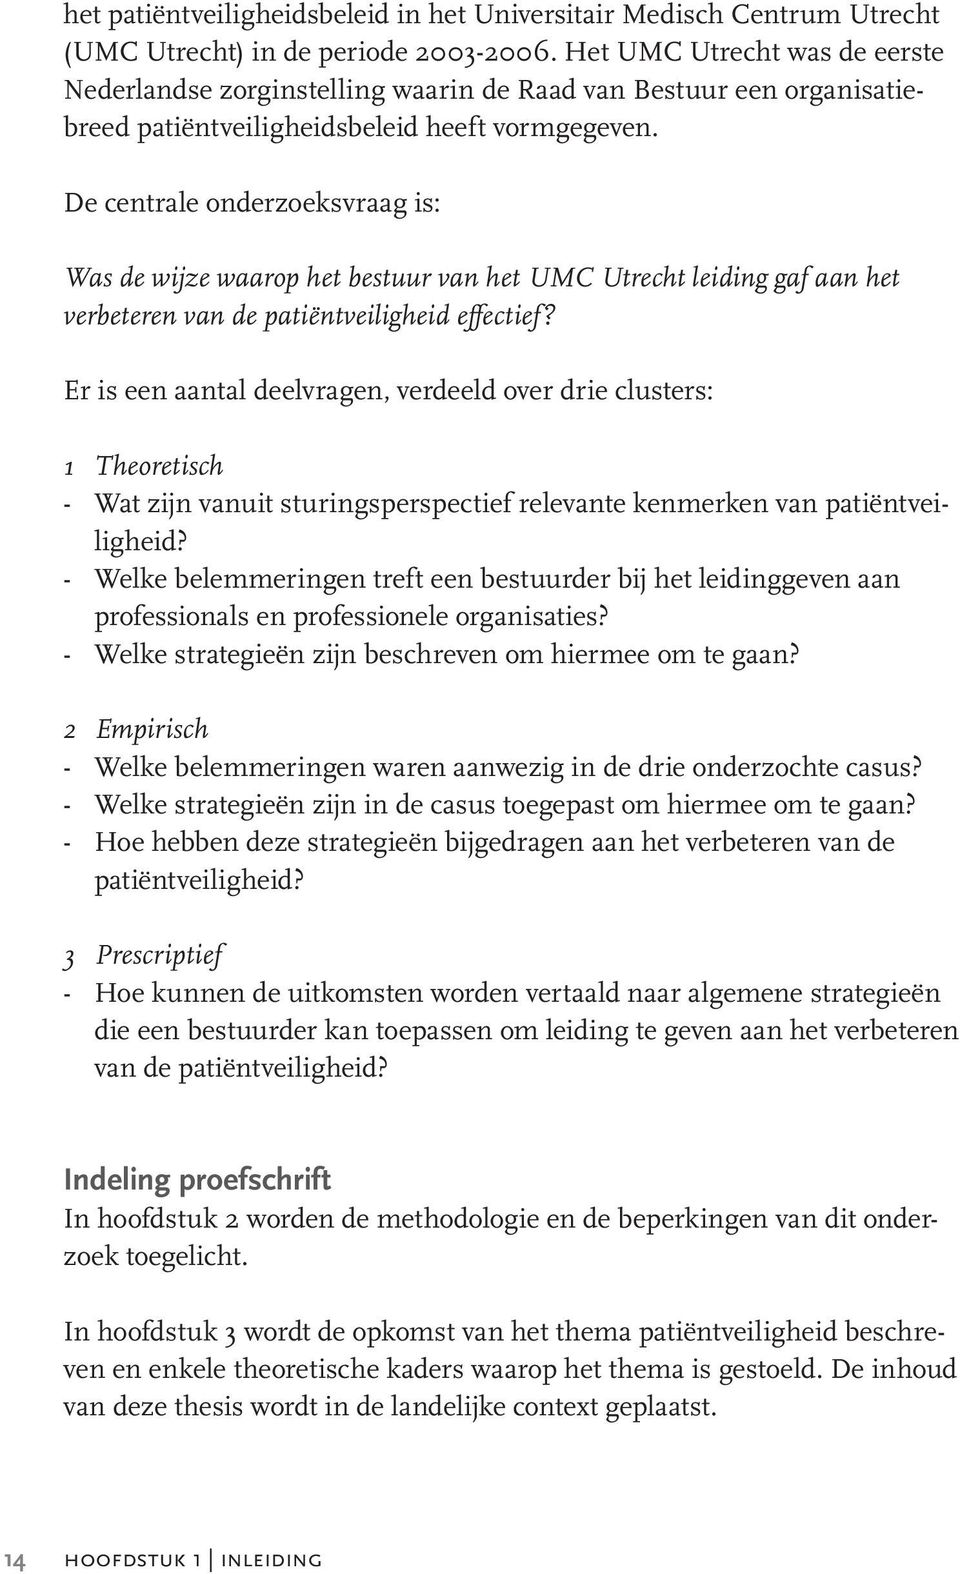 De centrale onderzoeksvraag is: Was de wijze waarop het bestuur van het UMC Utrecht leiding gaf aan het verbeteren van de patiëntveiligheid effectief?